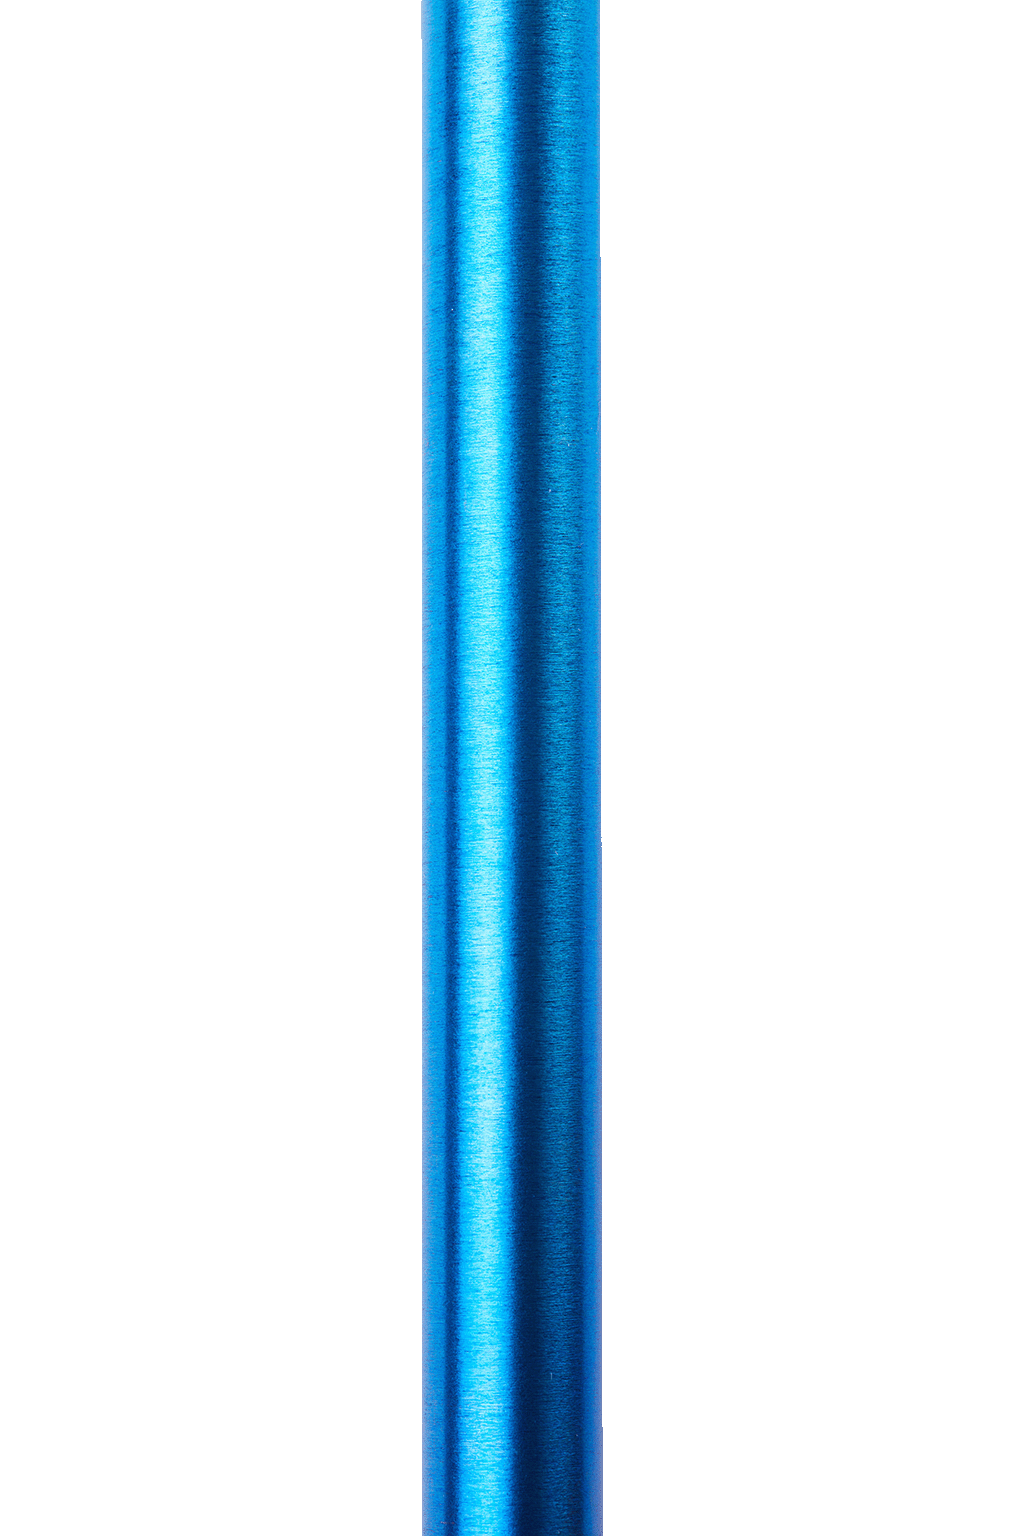 Matte UV Blue - Putter Shaft